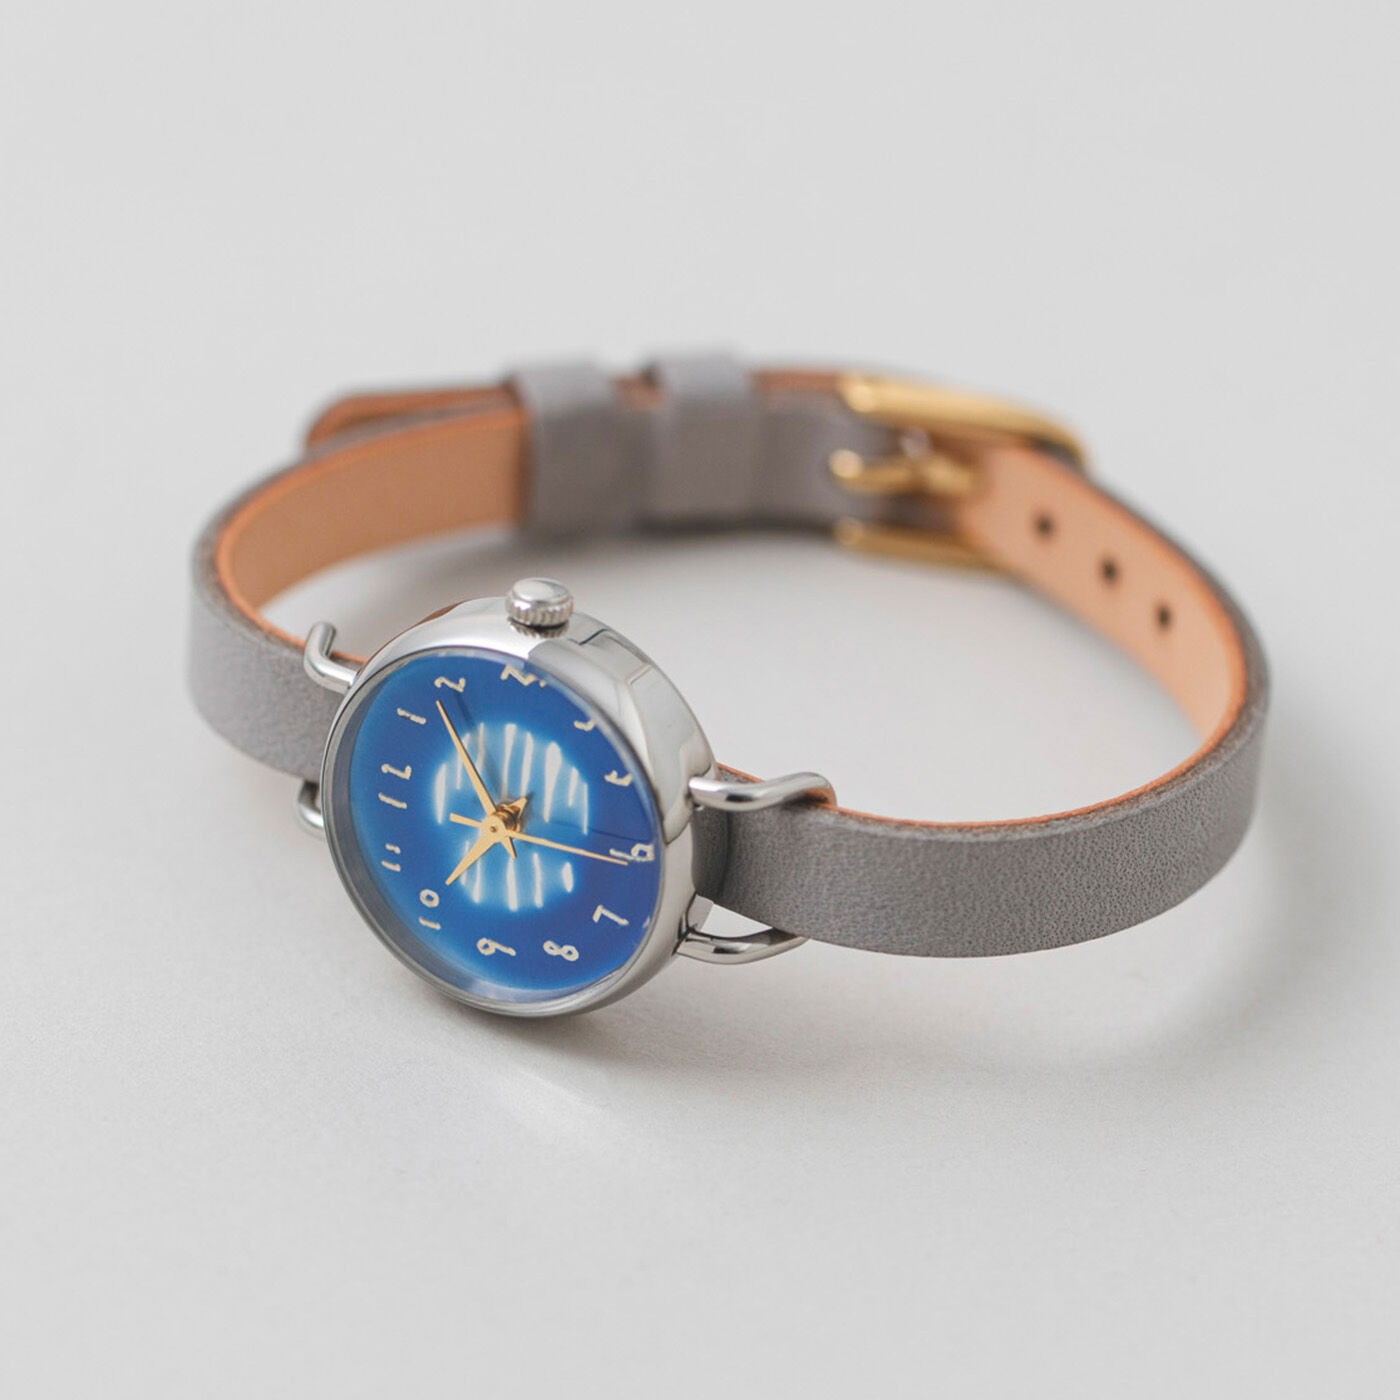 ＆Stories|金沢の時計職人が手掛けた 水面に映る朧月に見惚れる腕時計〈グレー〉|月明りの夜をイメージしたグレーのベルトとシルバーのフレームで、文字盤の青色を上品に引き立てます。